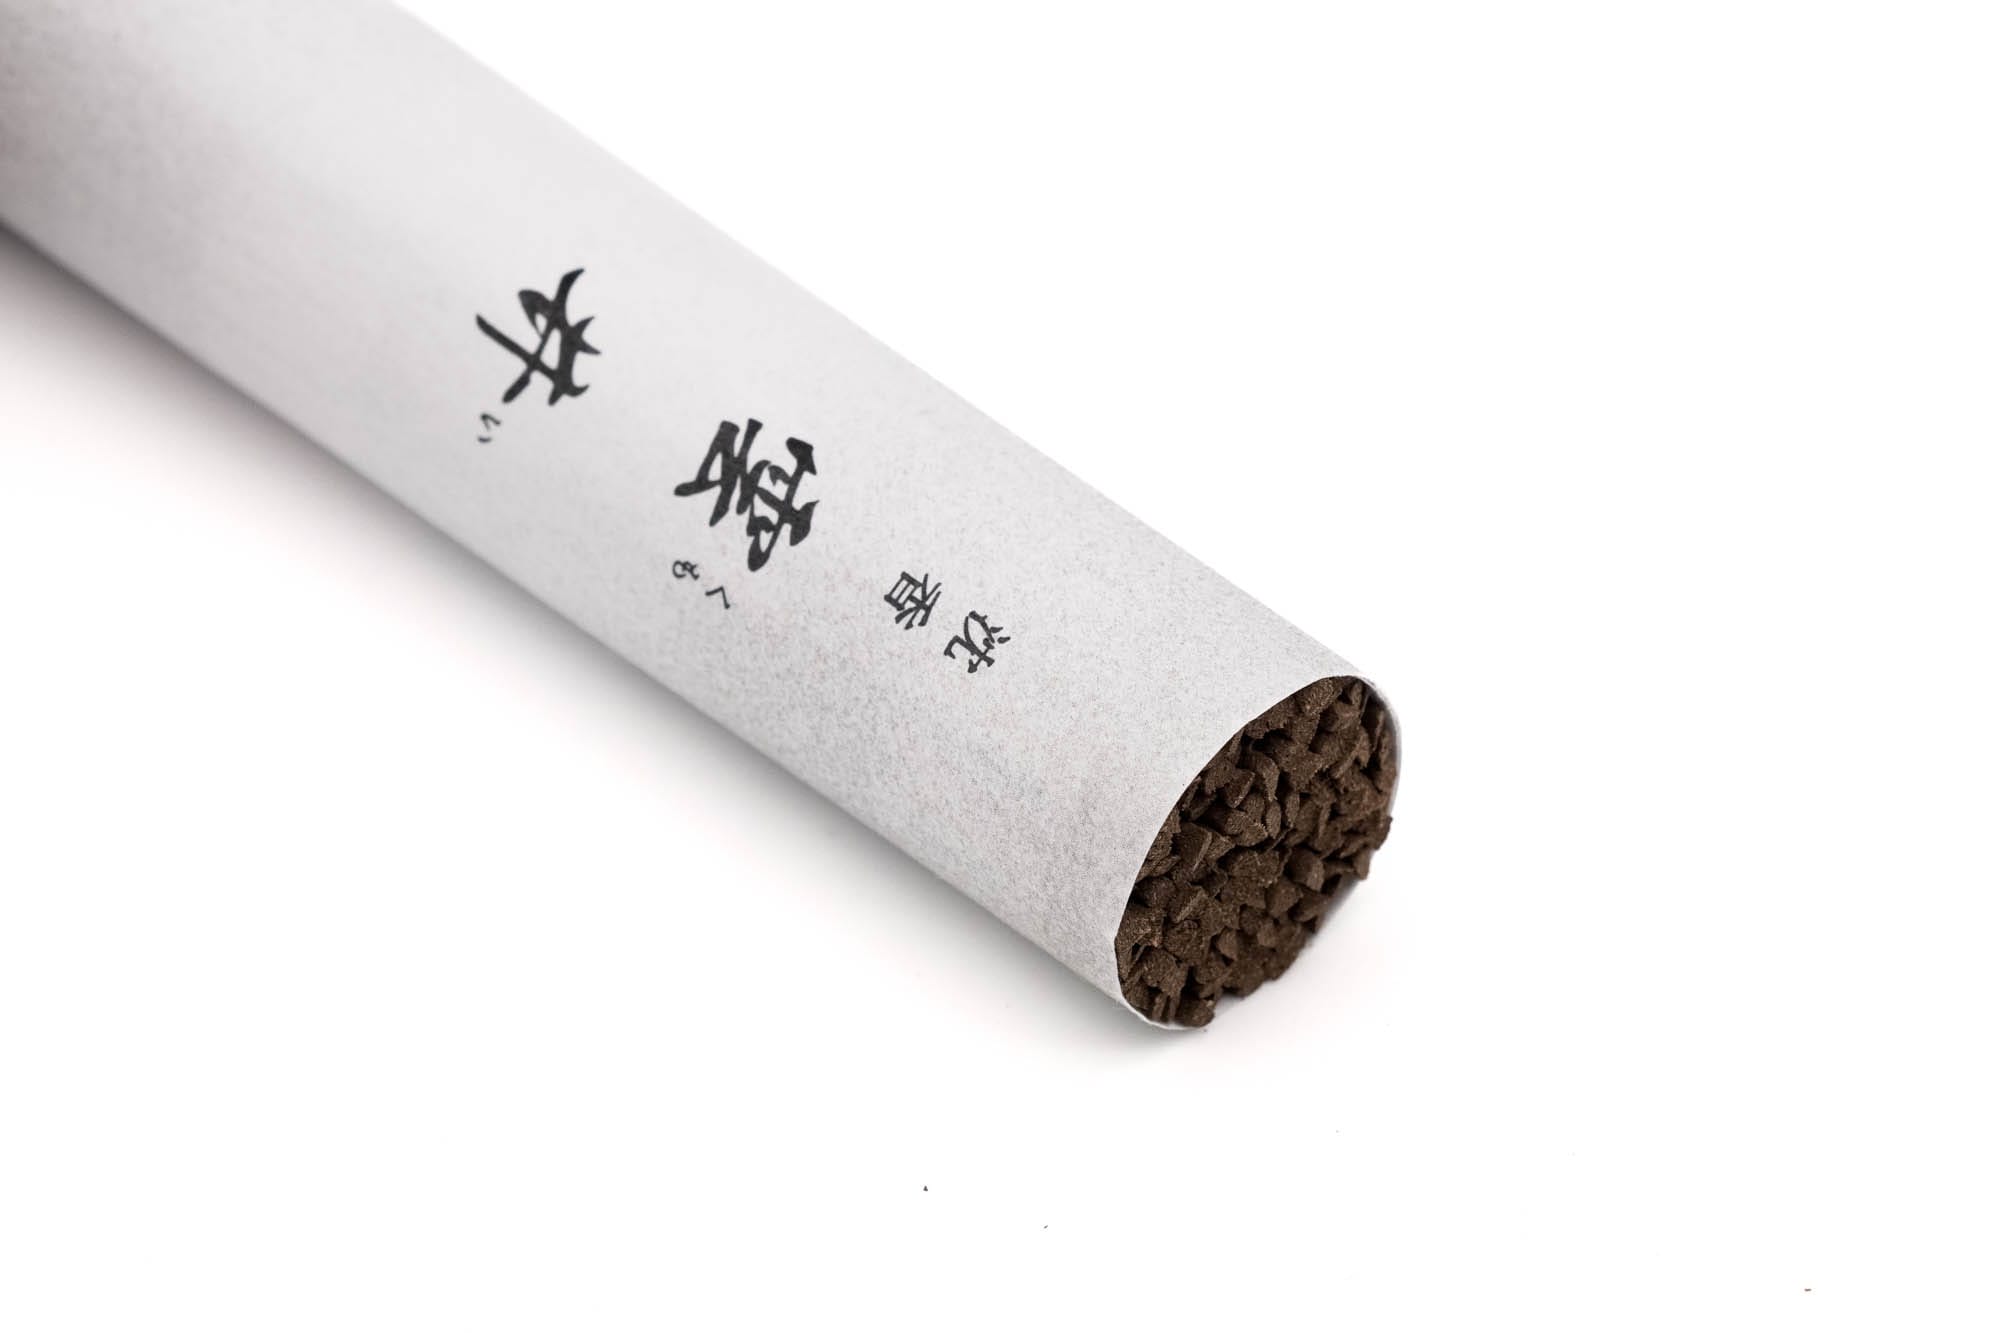 山田松 Yamadamatsu - Kumoi Aloeswood Incense Sticks